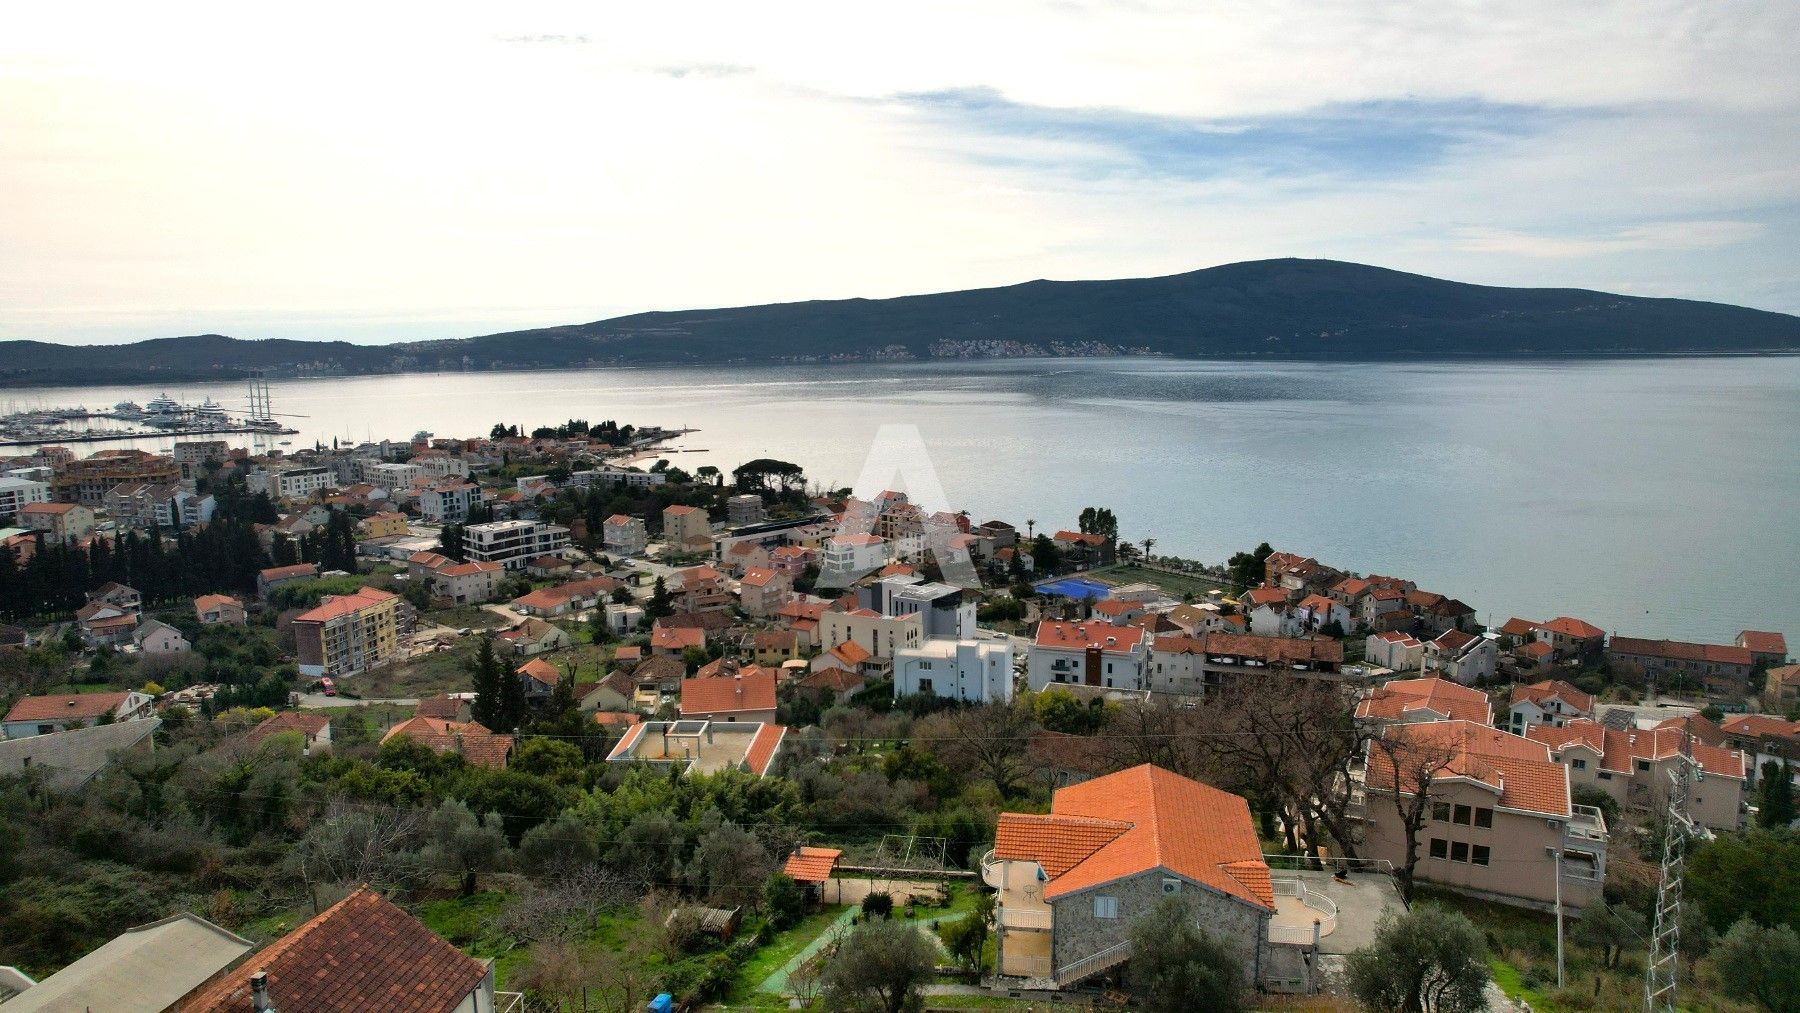 amforaproperty.com/Zemljiste 1800m2 sa ucrtanim projektom za izgradnju 3 vile u mestu Donja Lastva, Tivat, sa predivnim pogledom na more i Porto Montenegro.